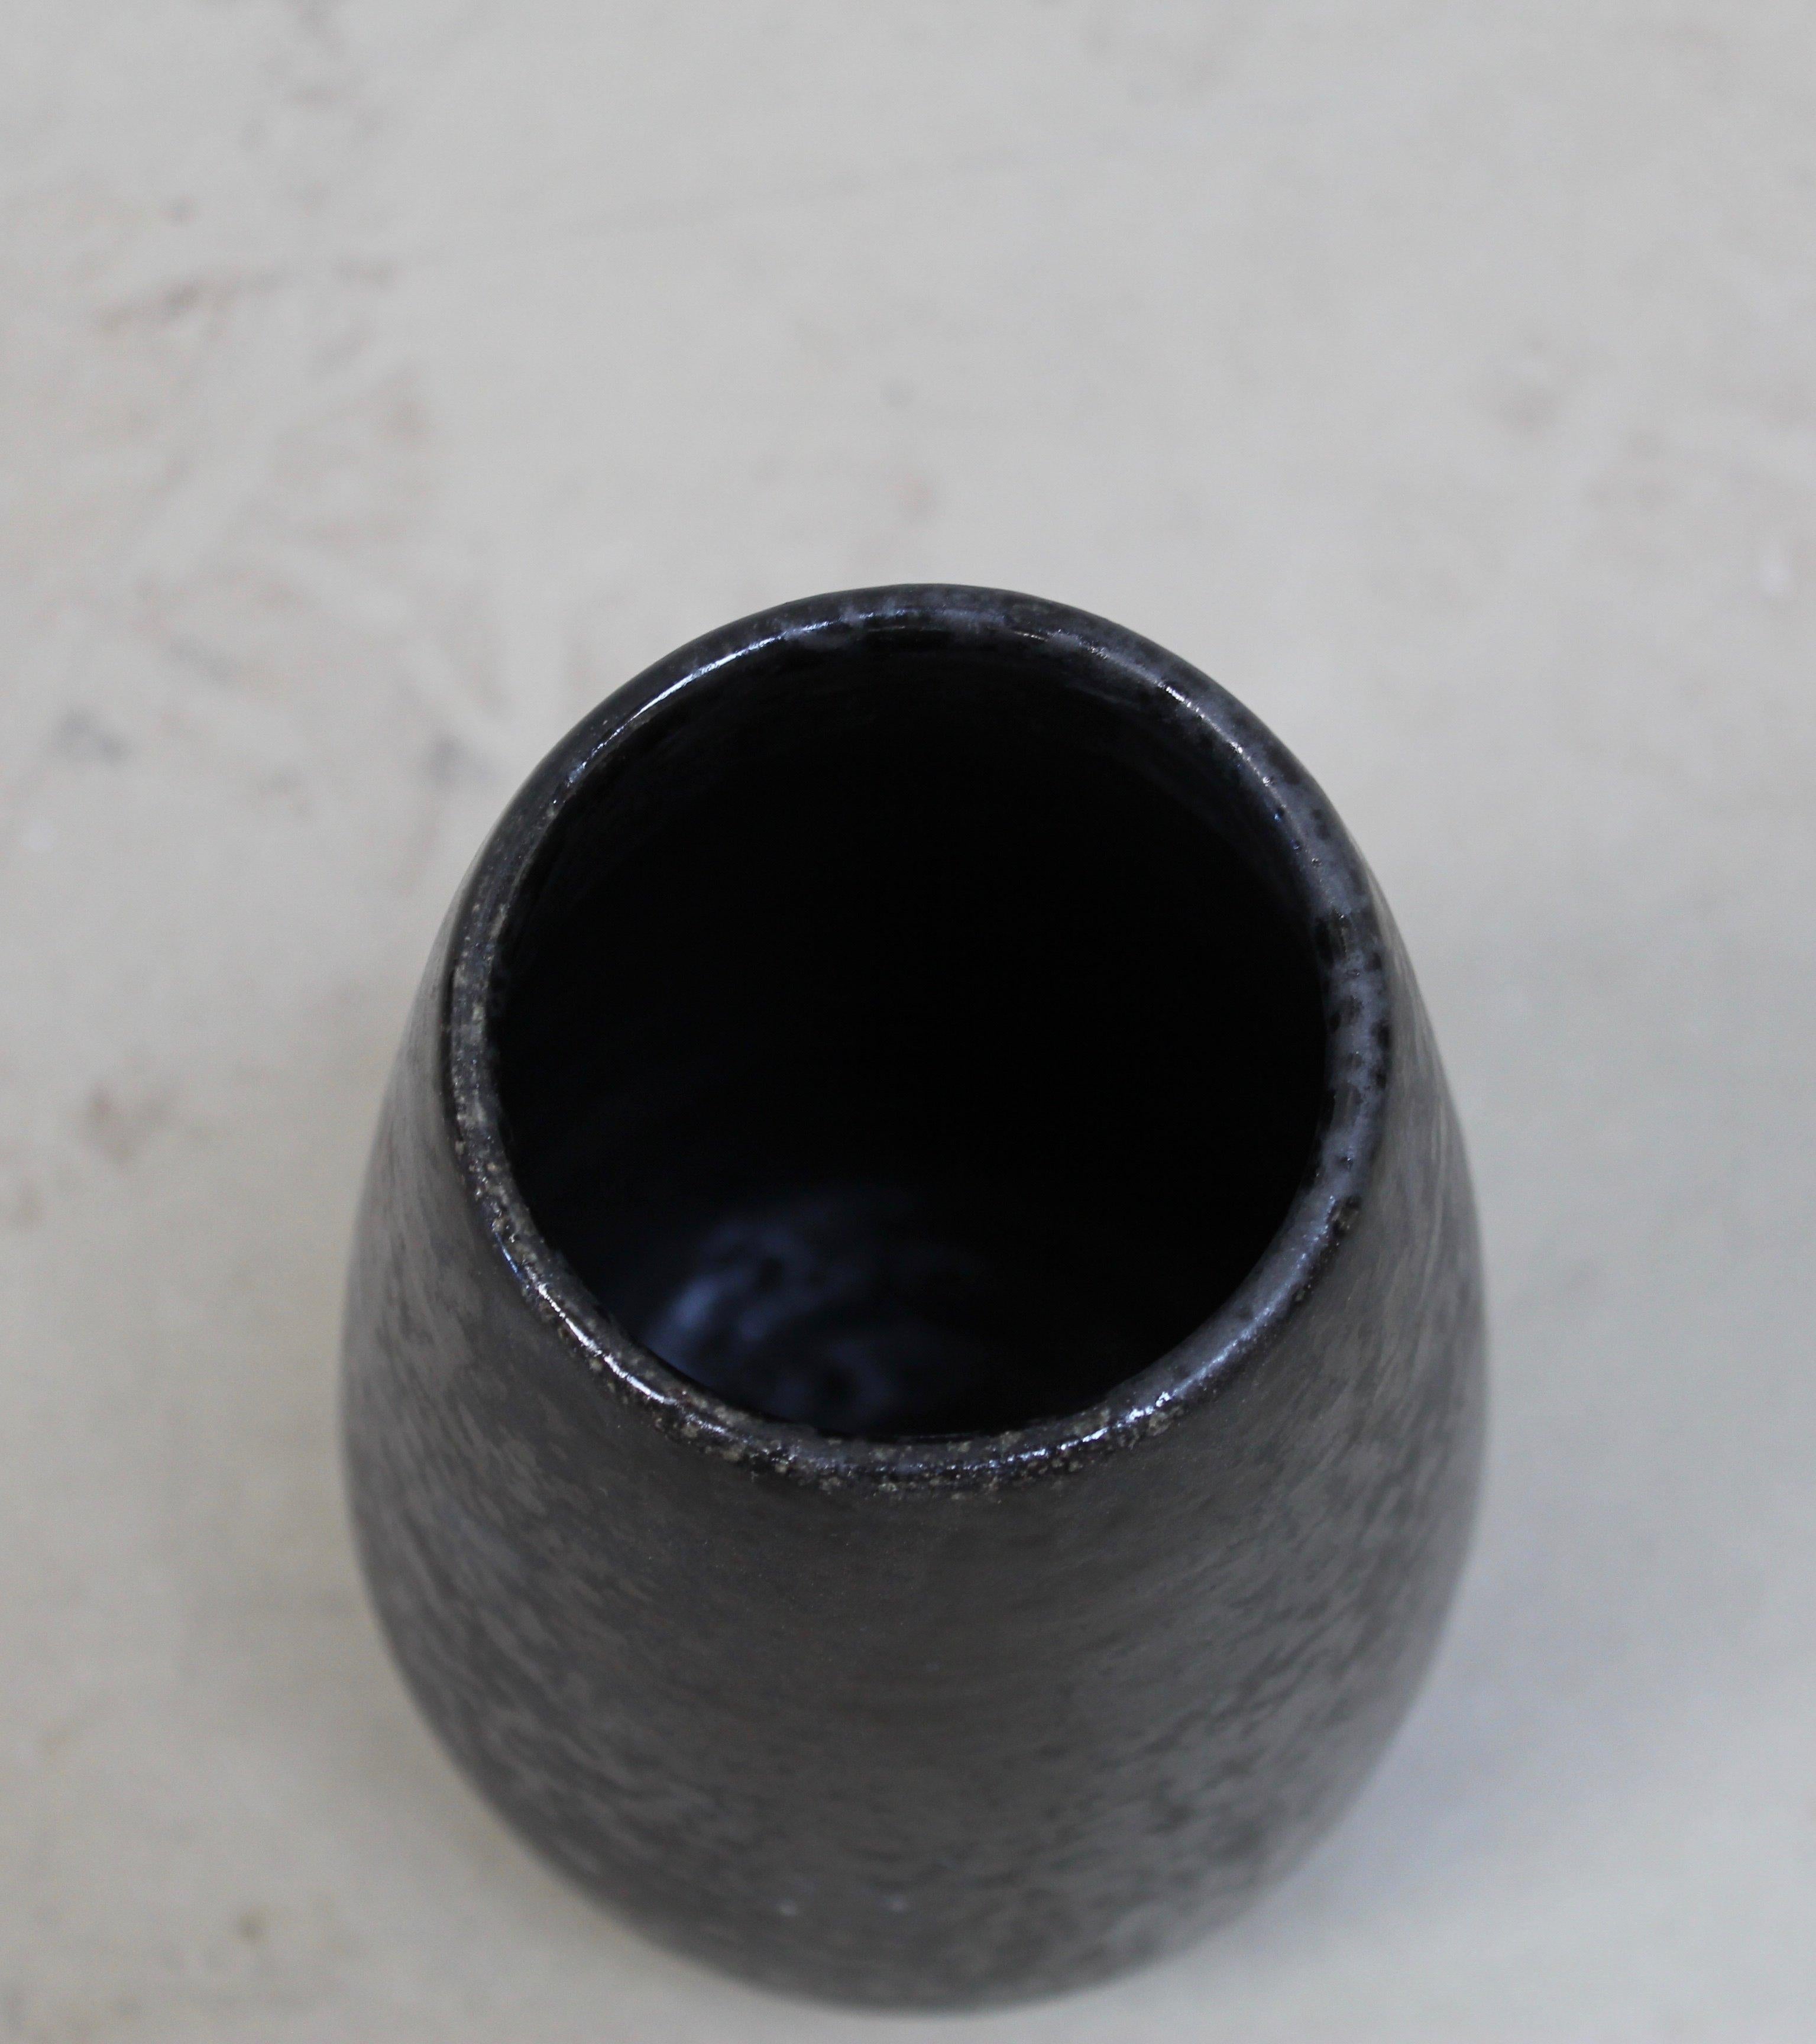 Danish KH Würtz Tapering Cone Vase in Black Glaze